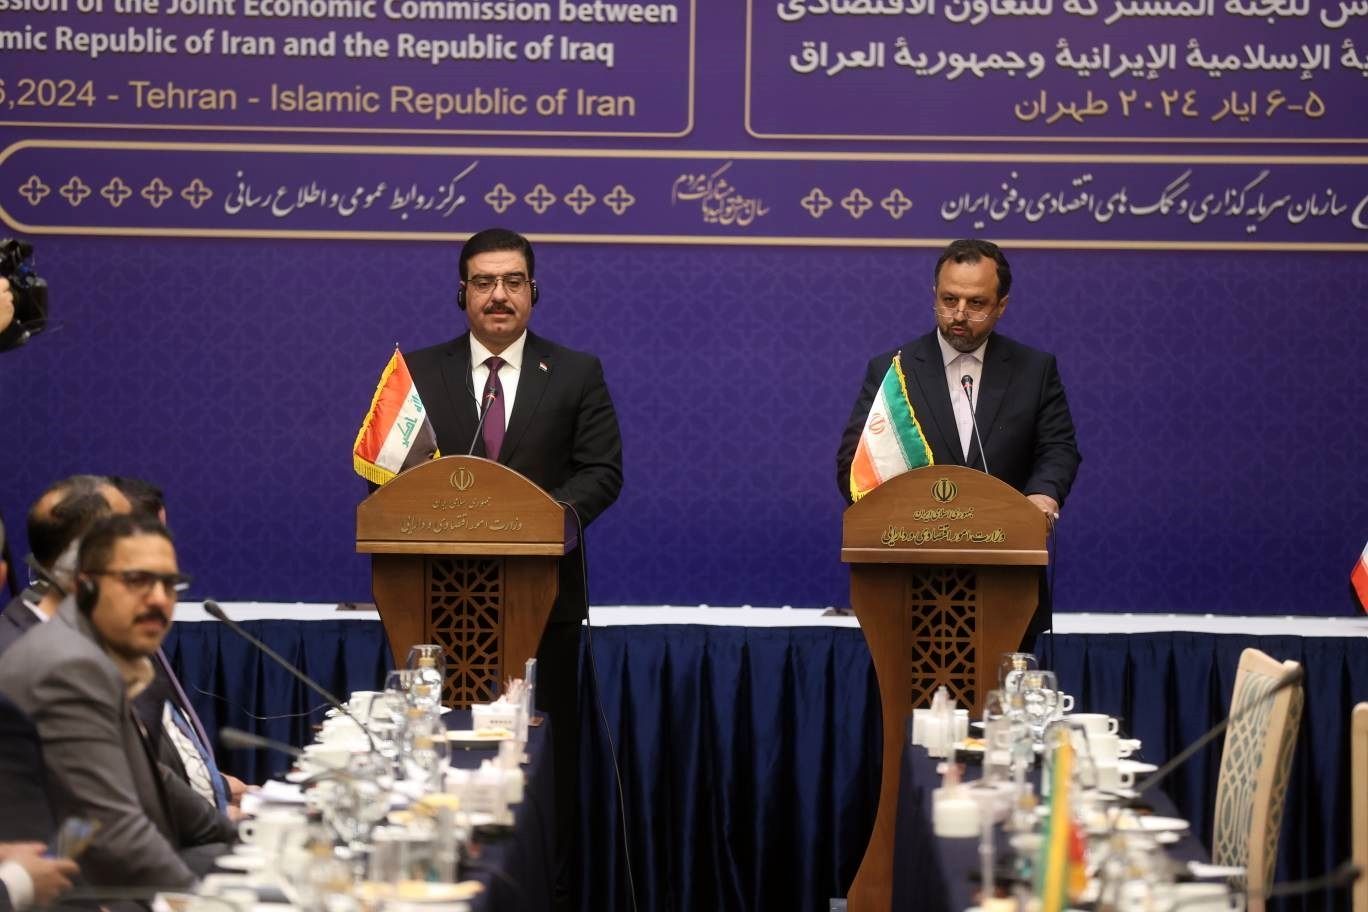 فصل جدیدی از توسعه روابط تجاری میان ایران و عراق آغاز شده است